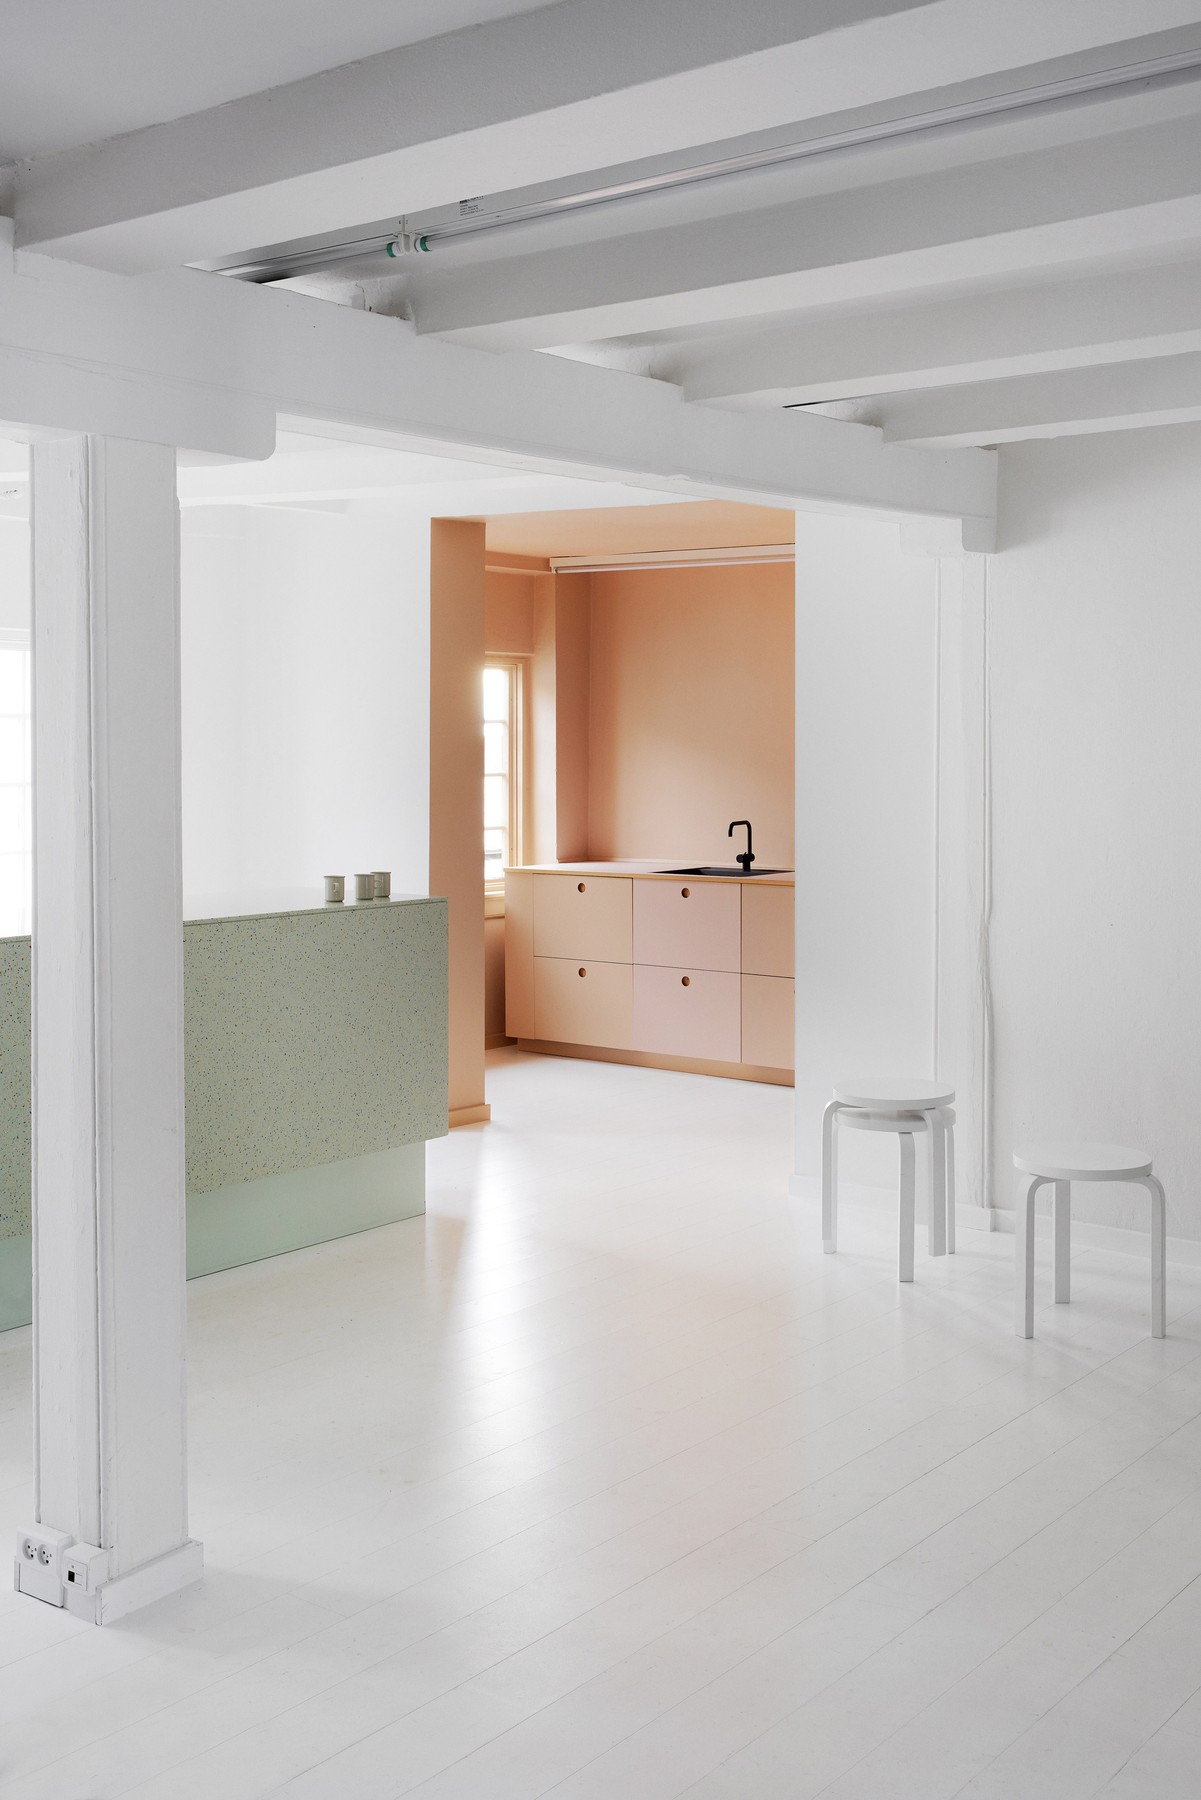 designers-remix-showroom-interiors-reform-kitchens-copenhagen_dezeen_2364_col_8.jpg